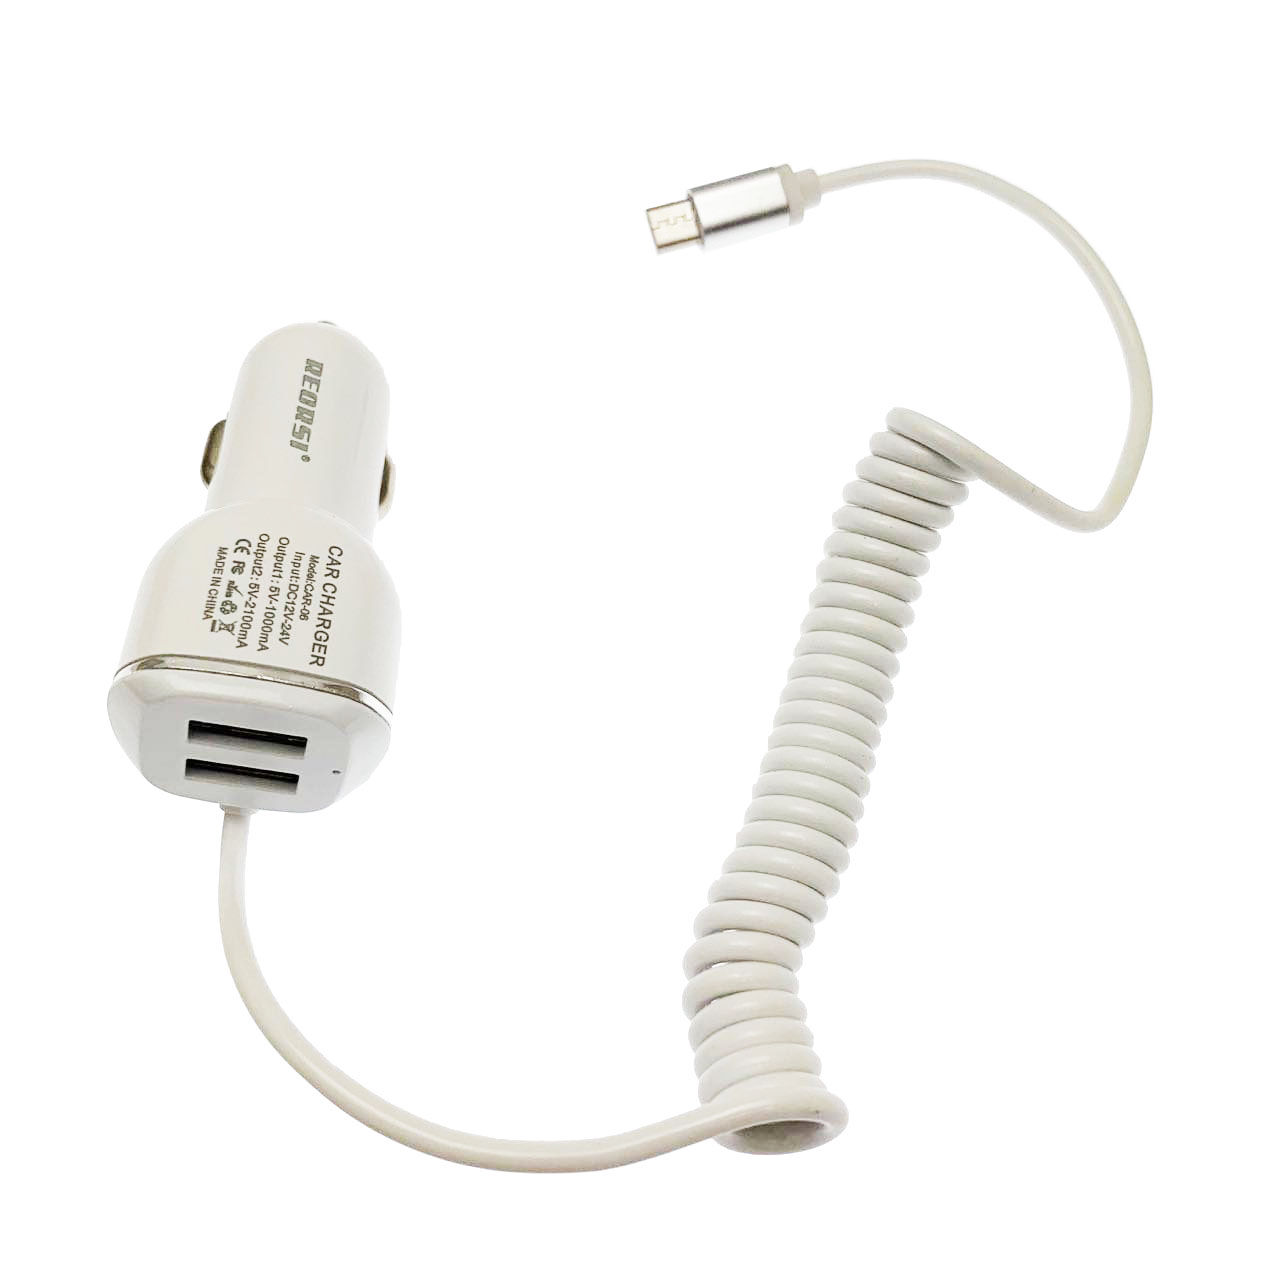 АЗУ (Автомобильное зарядное устройство) RECRCI CAR-06 DC12-24V, 2 USB (5V-1.0A / 5V-2.1A), с витым кабелем micro USB 1 метр, цвет белый.